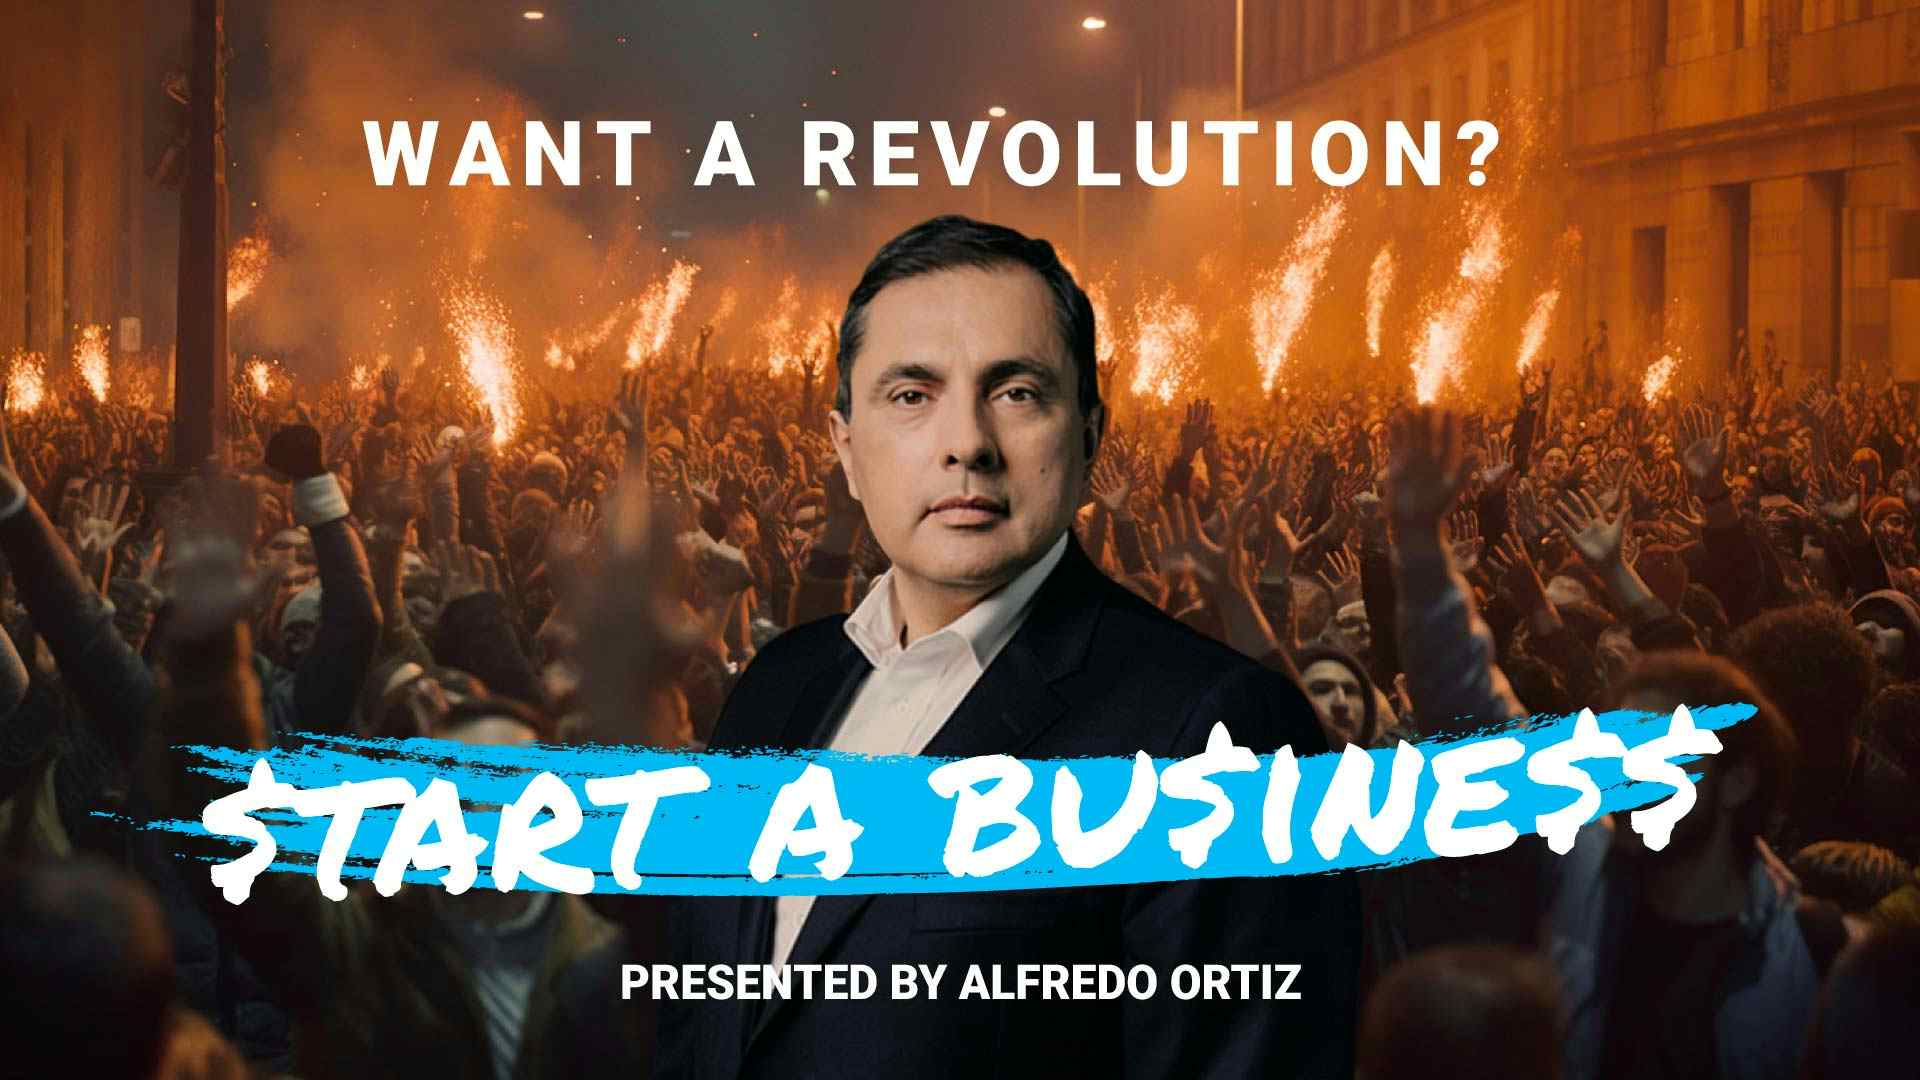 Want a Revolution? Start a Business.